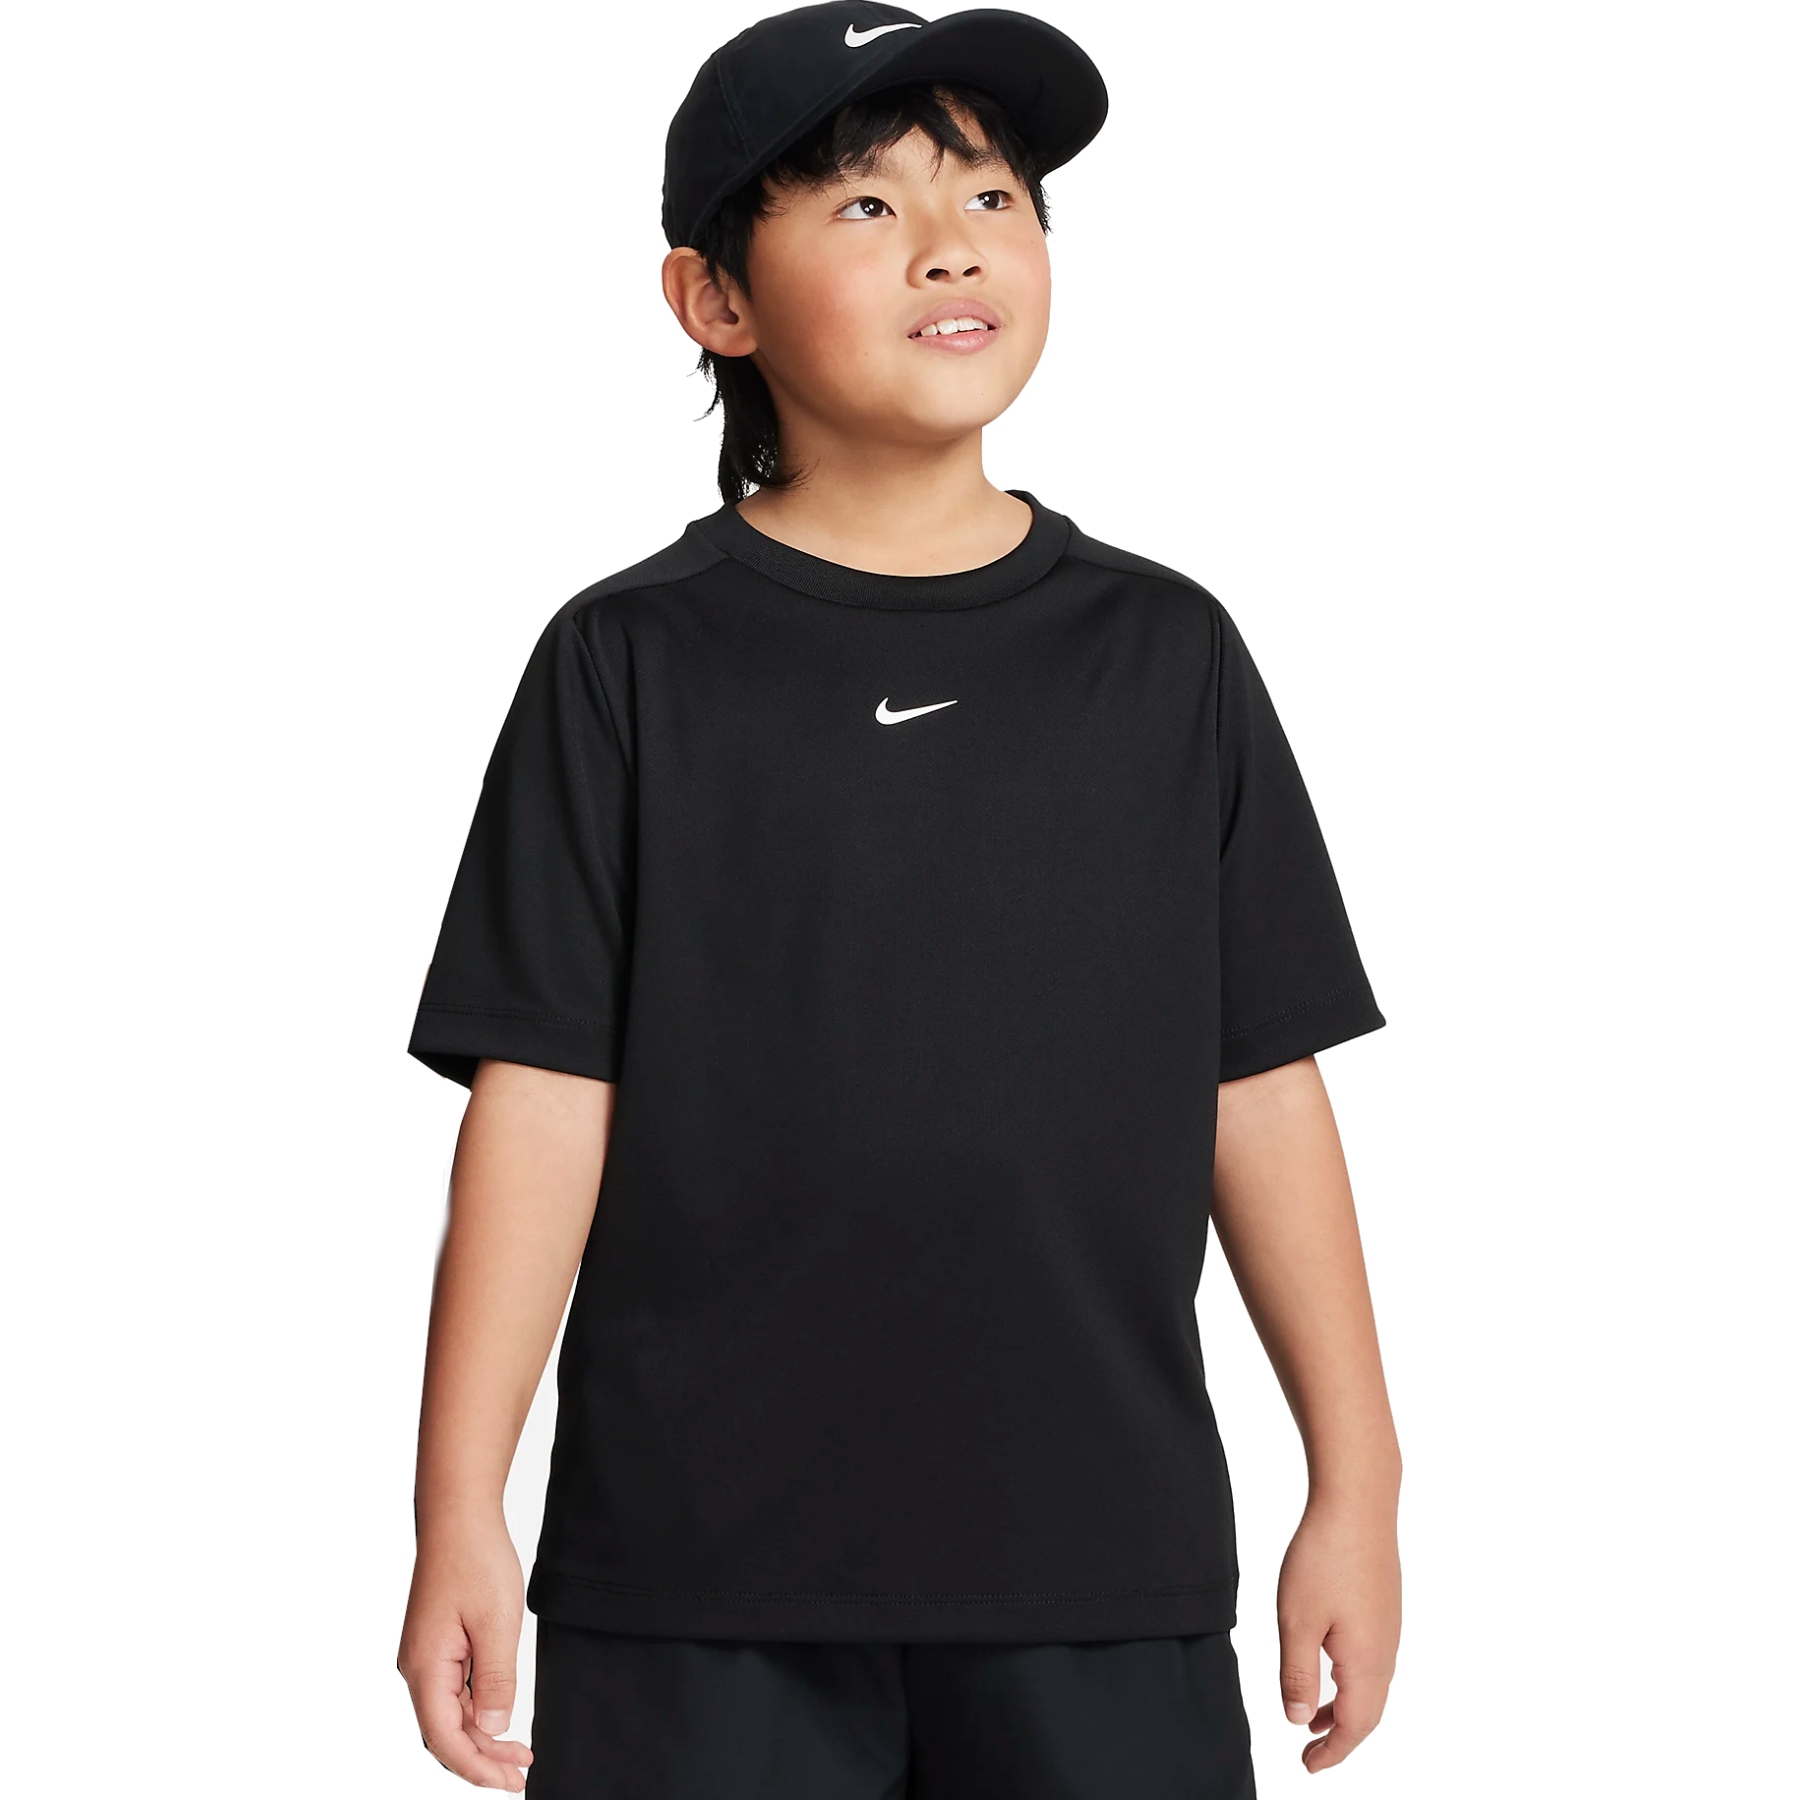 Produktbild von Nike Multi Dri-FIT-Trainingsoberteil für ältere Kinder - schwarz DX5380-010